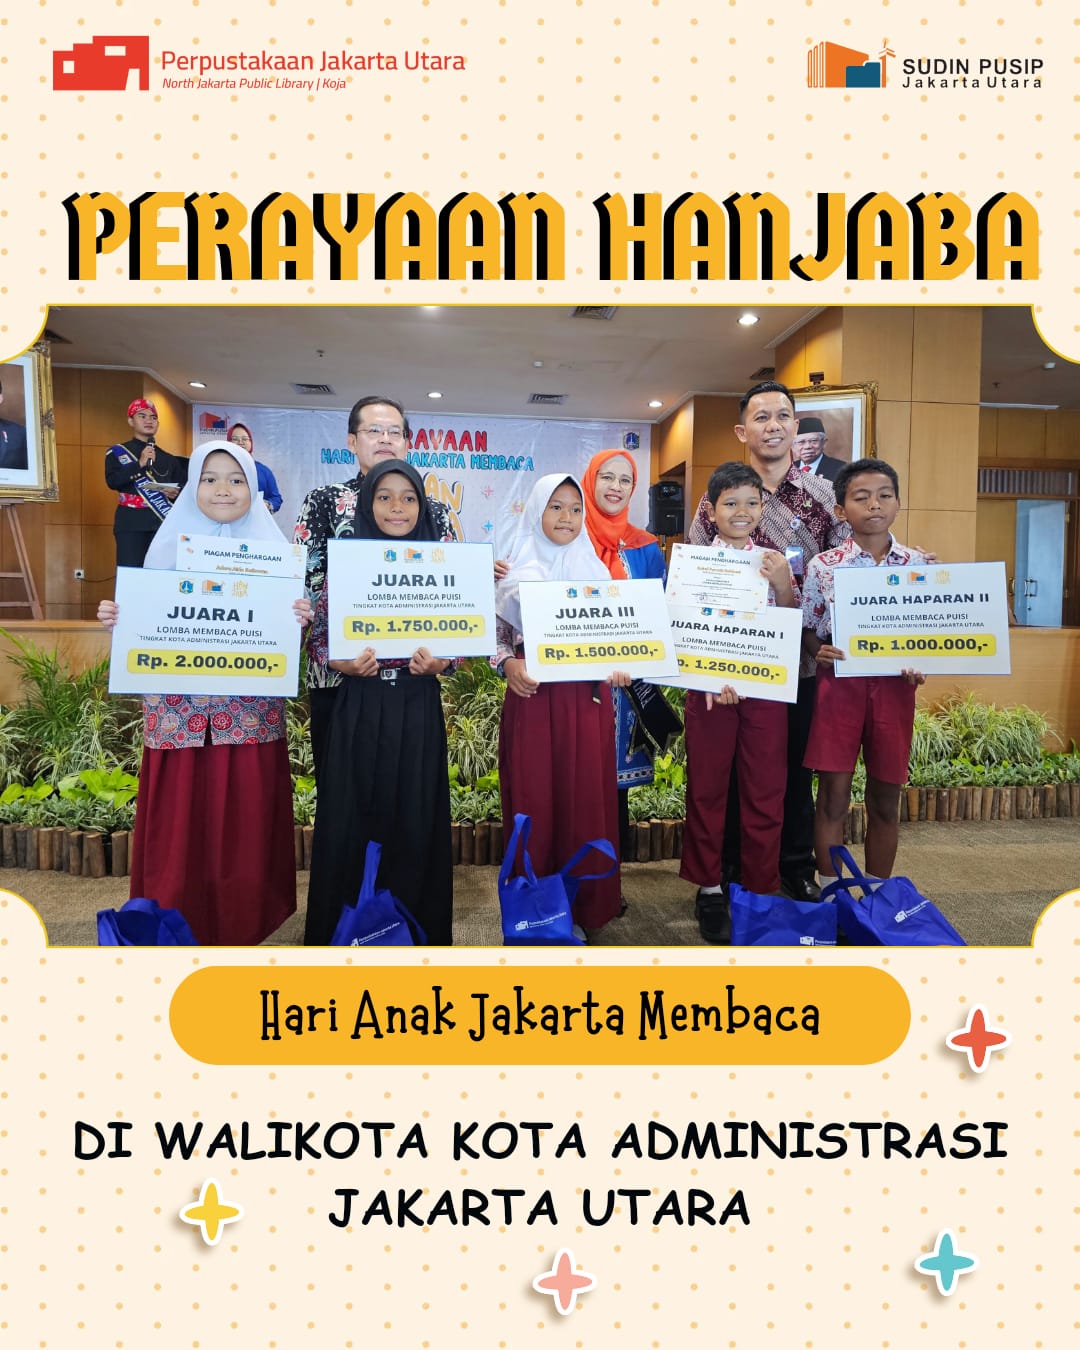 Perayaan Hari Anak Jakarta Membaca (HANJABA) Jakarta Utara